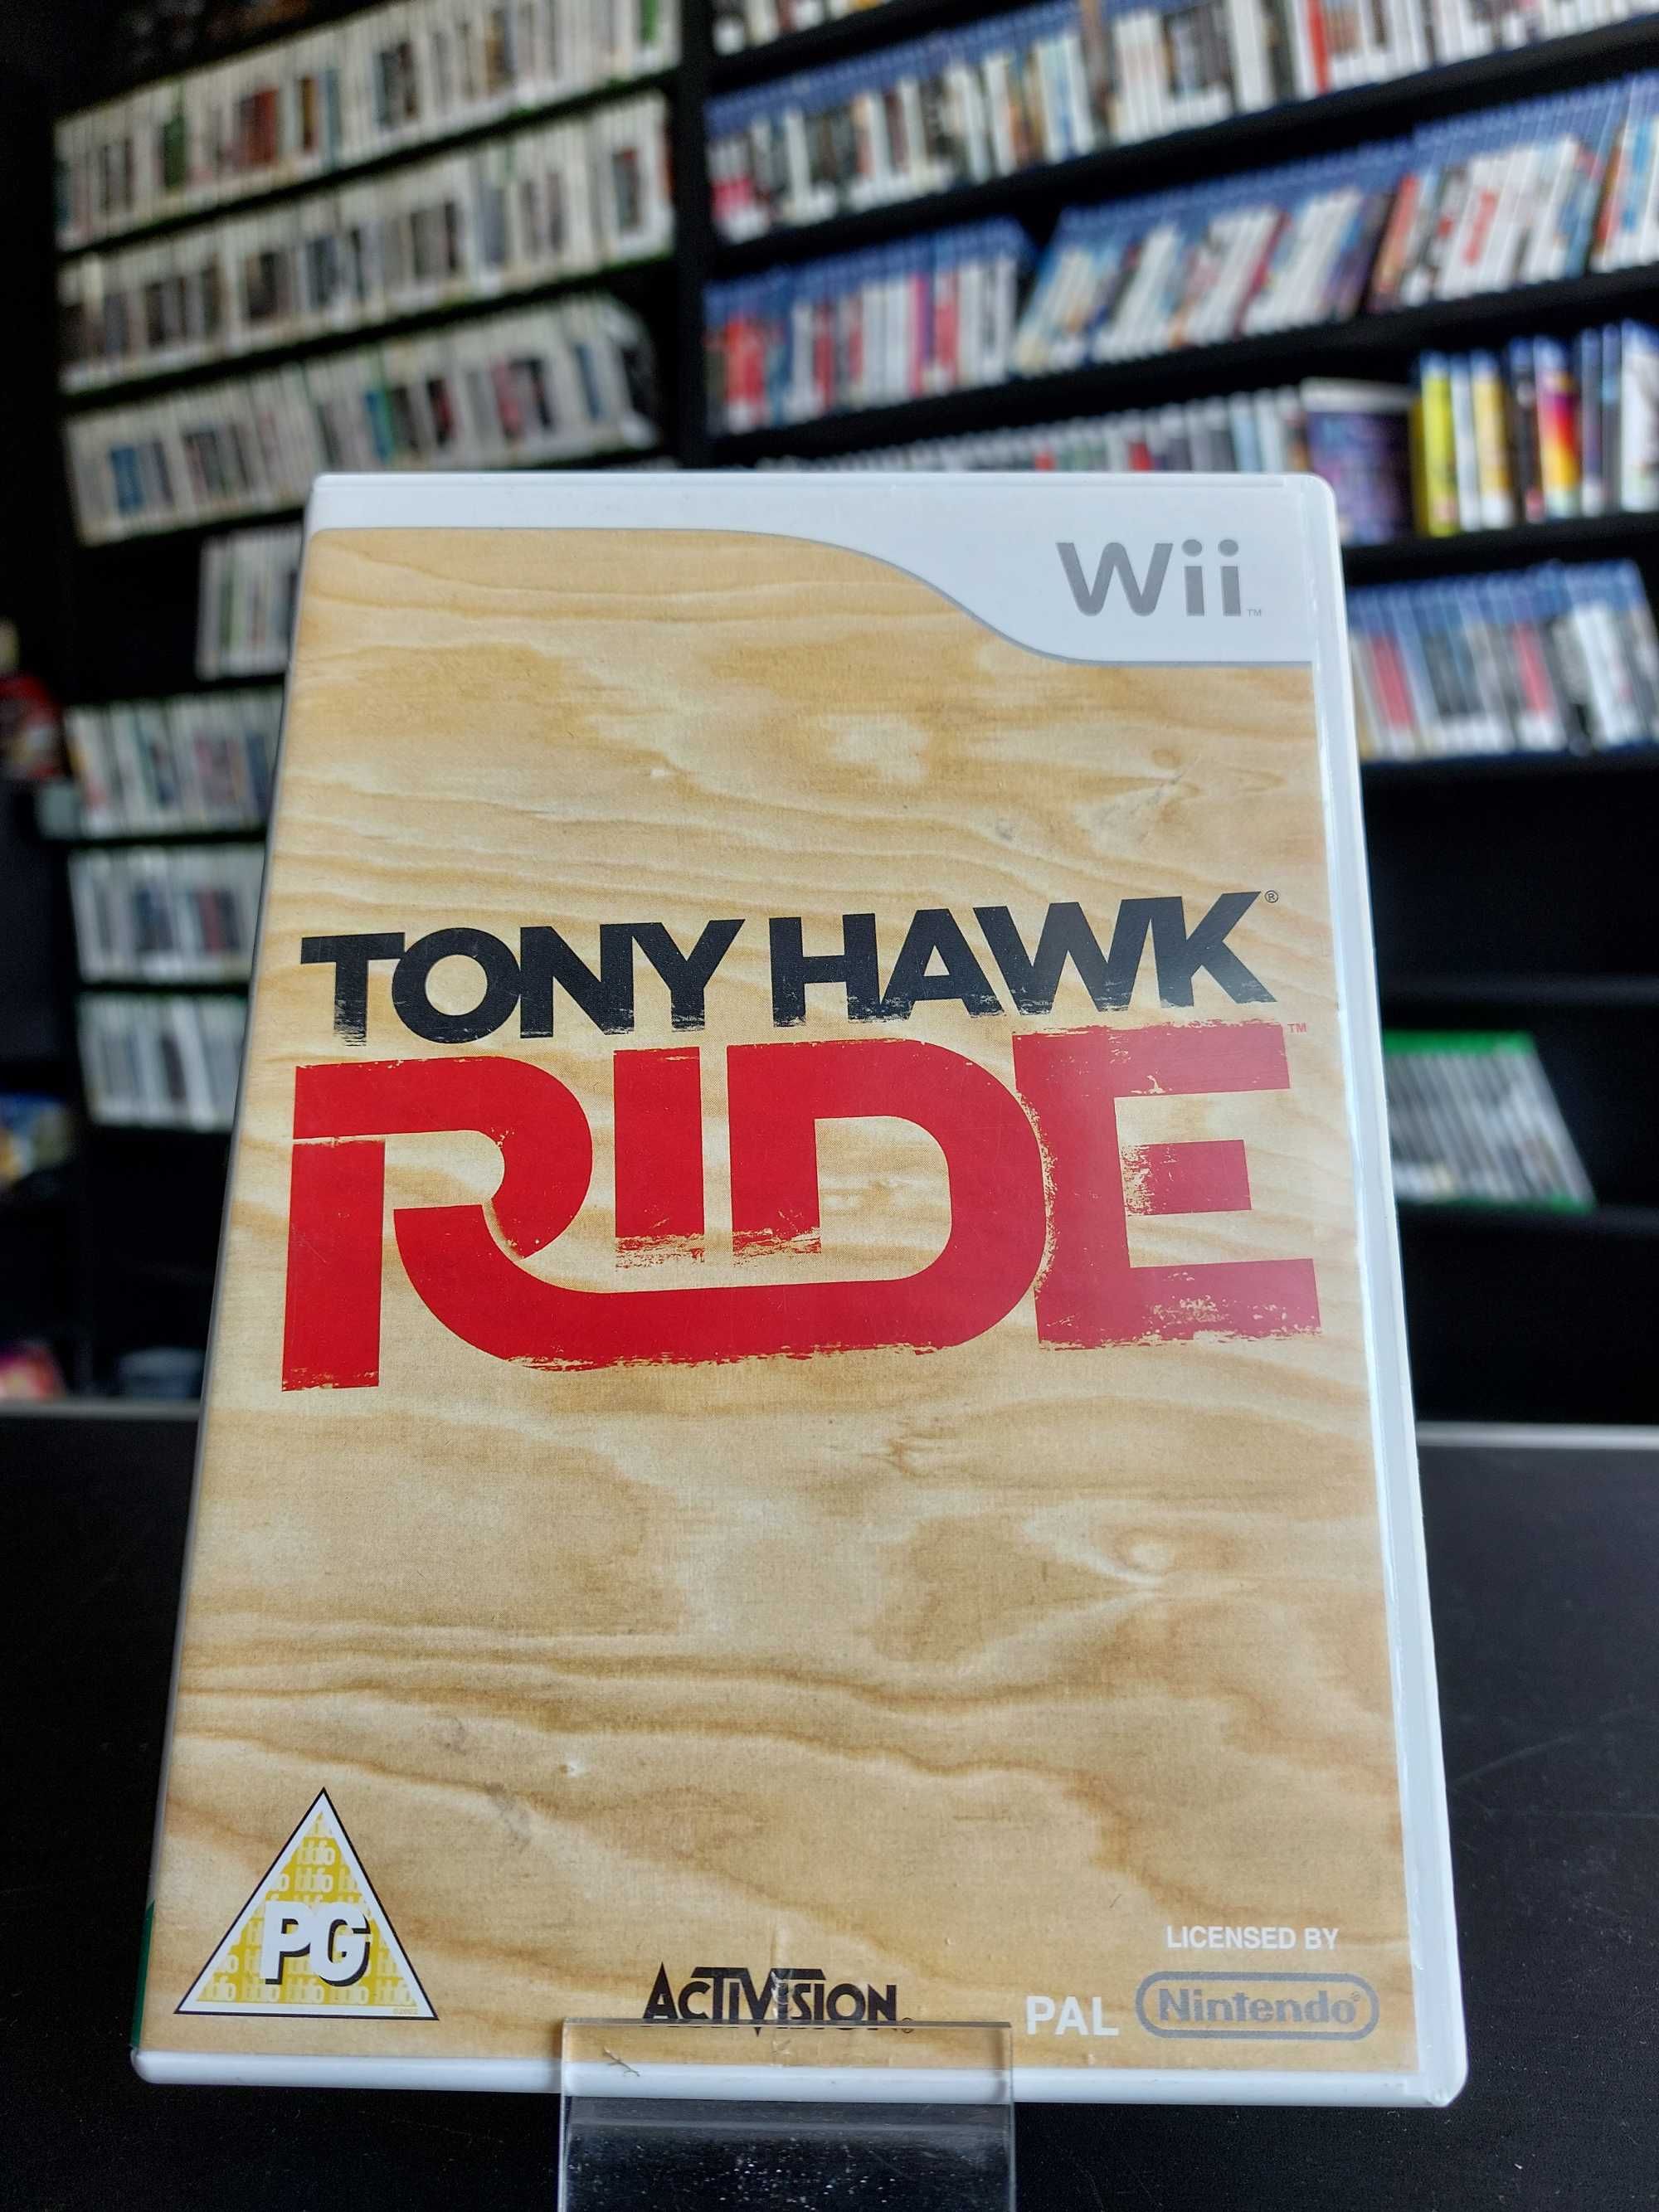 Tony Hawk Ride - Sklep Będzie Granie Zabrze